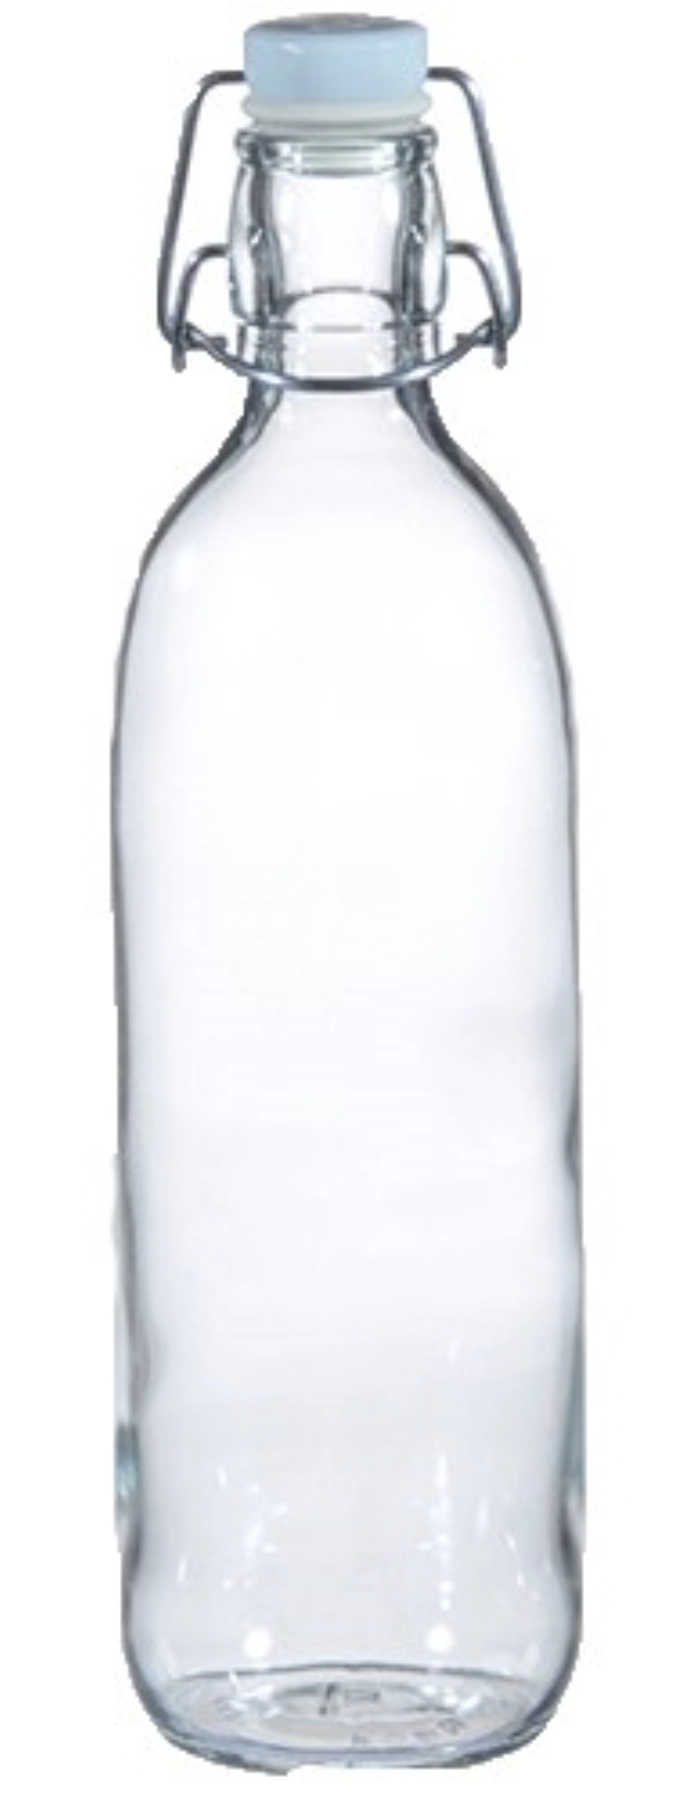 Emilia Flasche 1 lt. mit Bügelverschluss